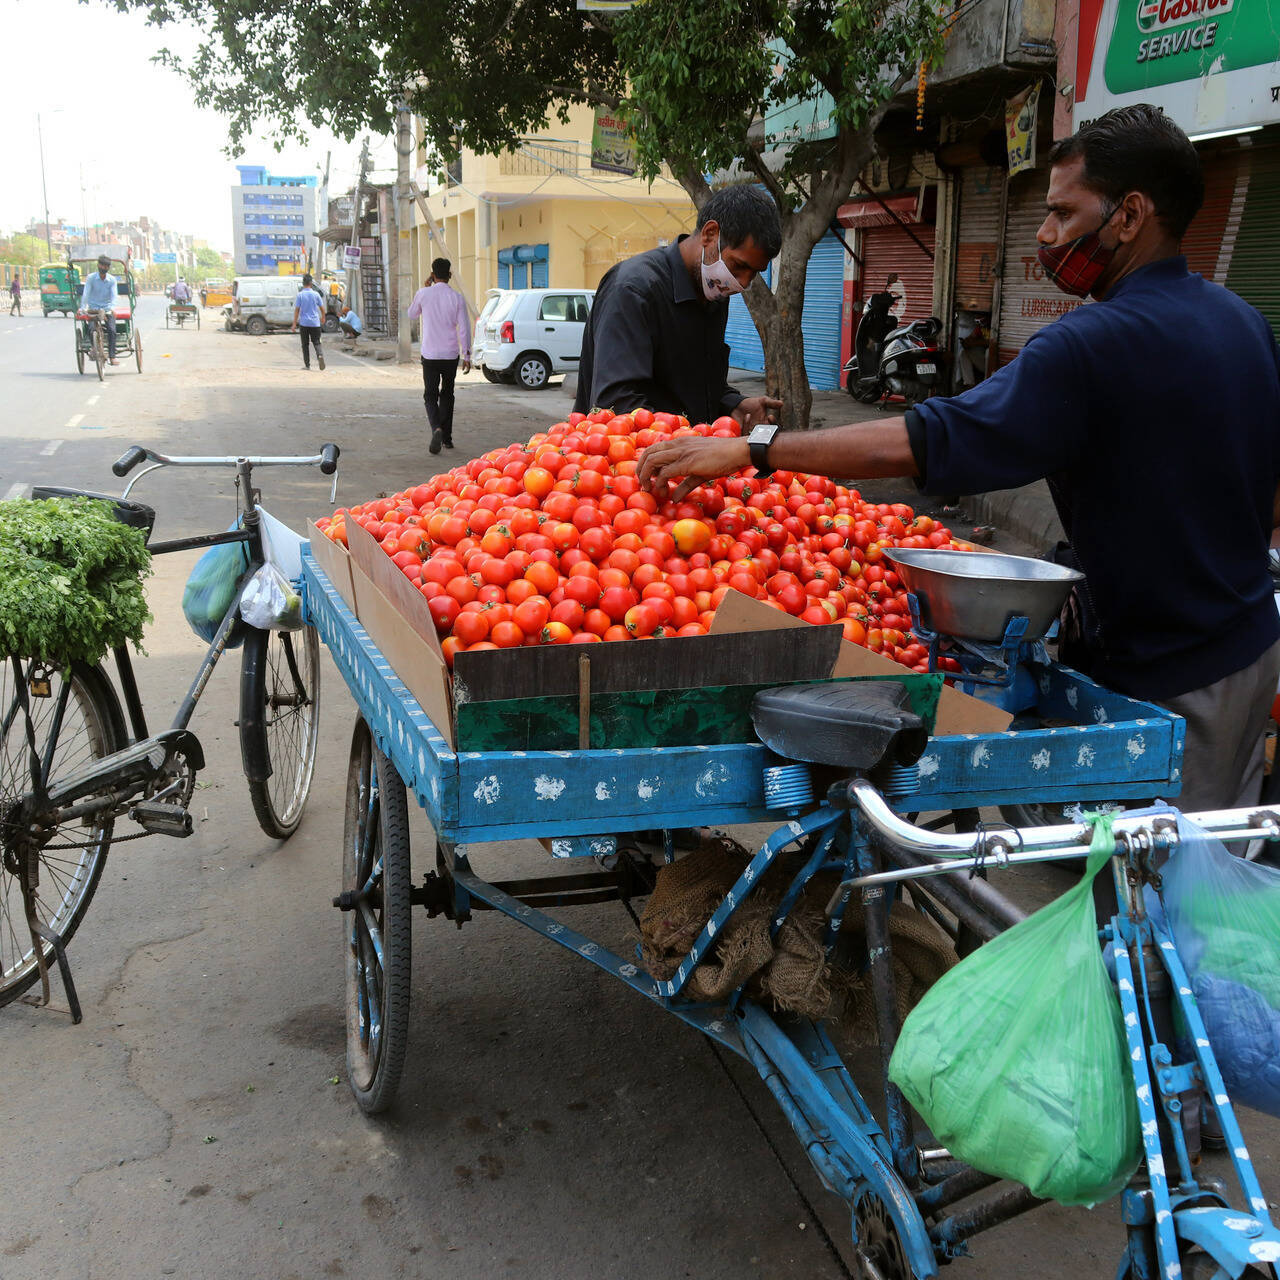 Khi cà chua có thể khiến chính trường Ấn Độ 'dậy sóng'